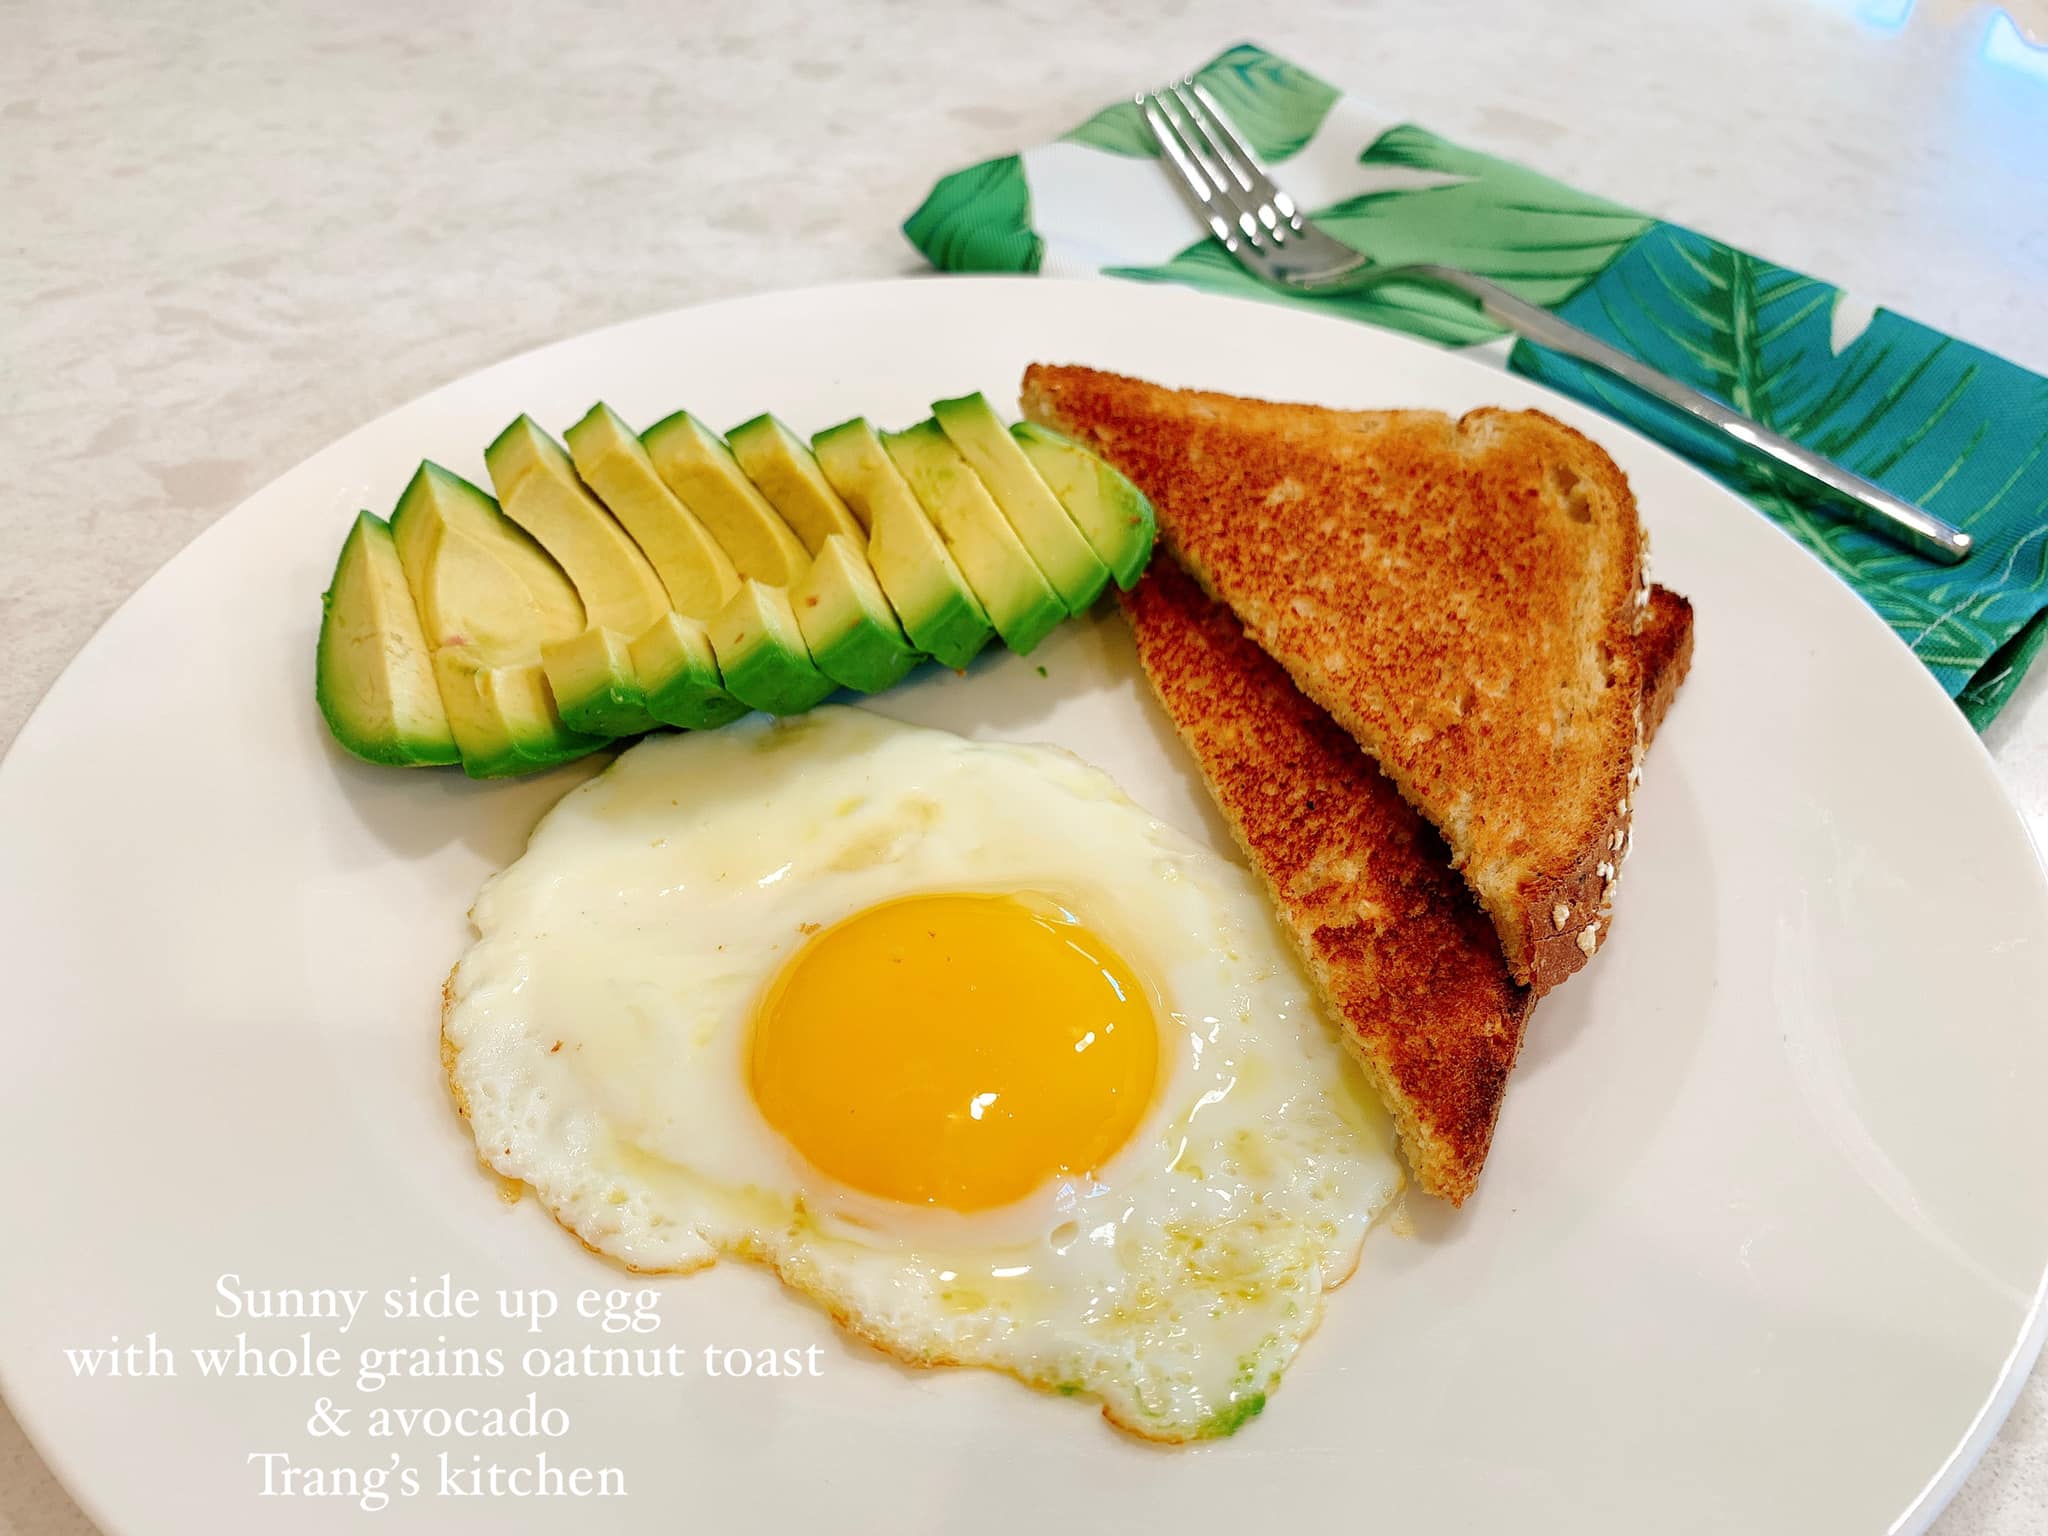 Món ăn đẹp chế biến với trứng là một trải nghiệm đặc biệt không chỉ về mặt thị giác mà còn về mặt hương vị. Hãy xem hình ảnh về cách chế biến và trang trí các món ăn đẹp với trứng để khám phá những cách làm mới lạ và tinh tế nhất.